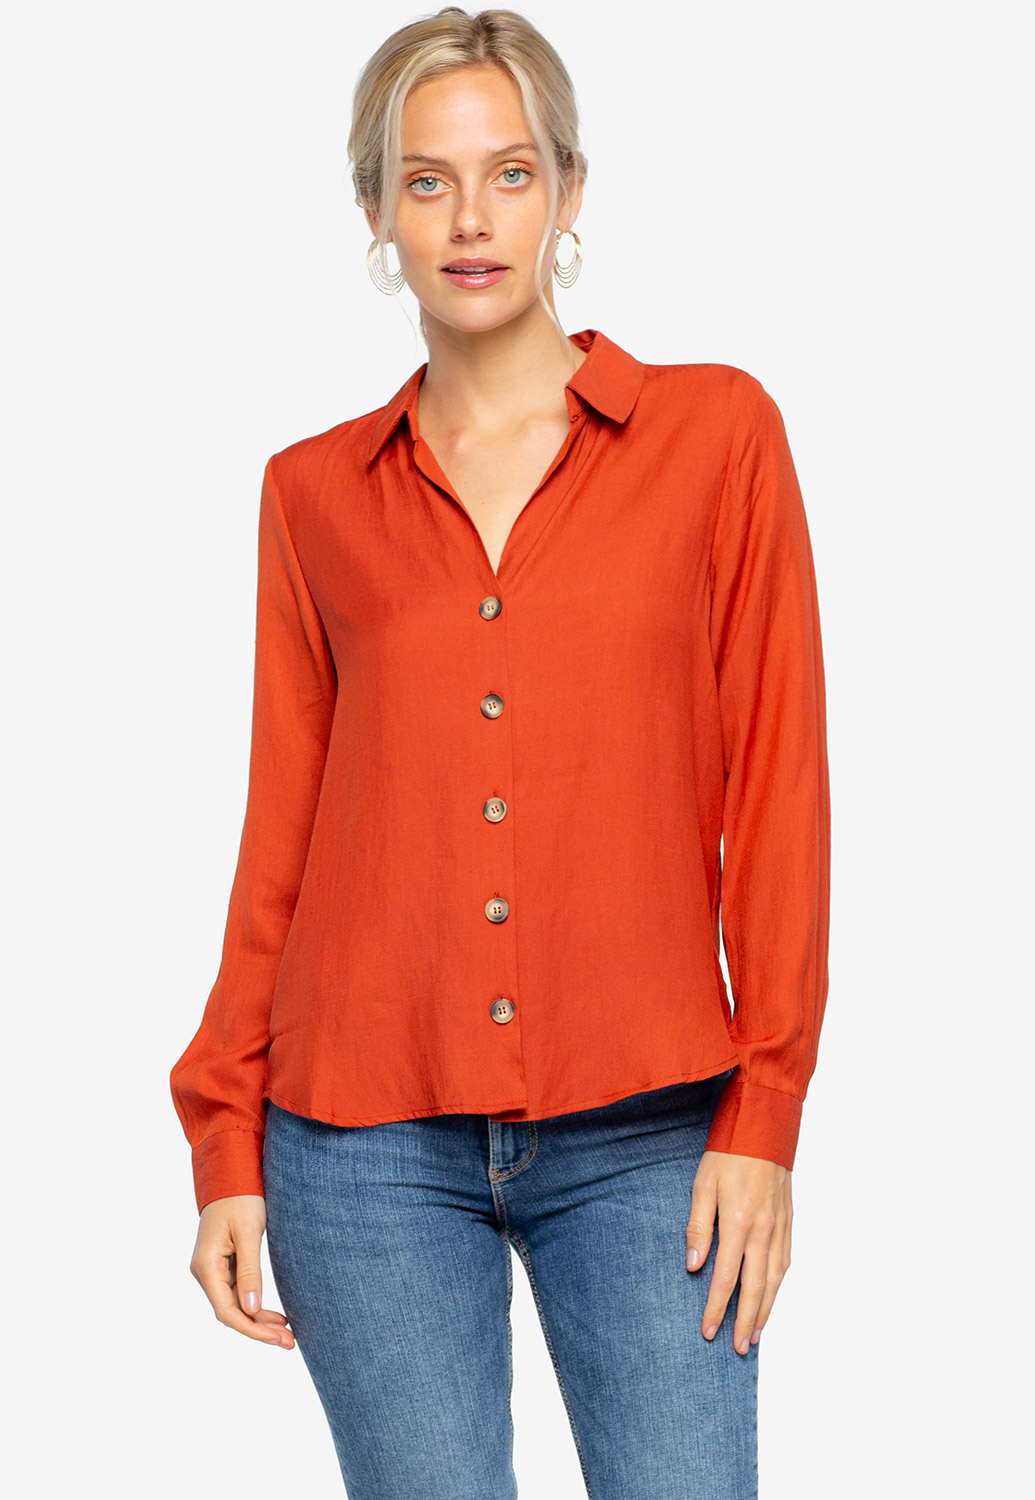 Button Up Dressy Blouse | Shop Tops at Papaya Clothing